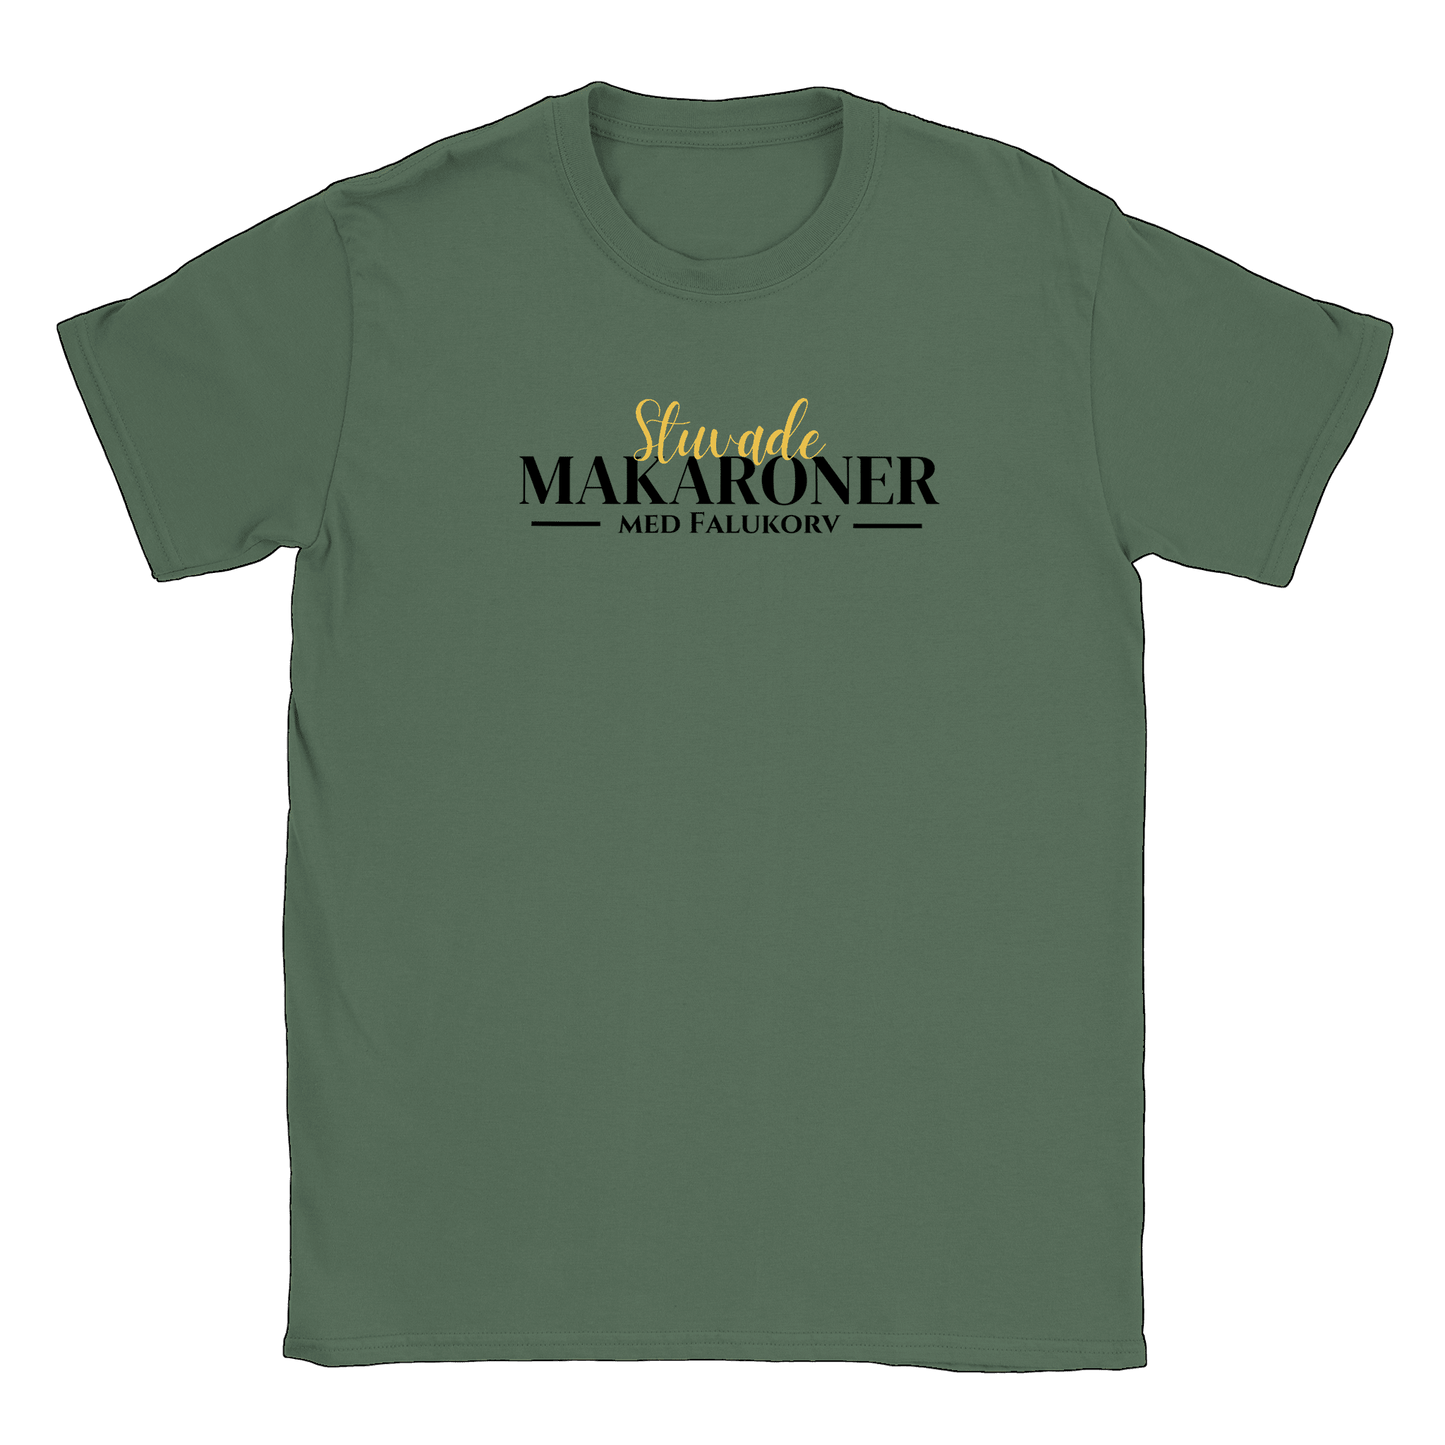 Stuvade makaroner med falukorv - T-shirt Military Green